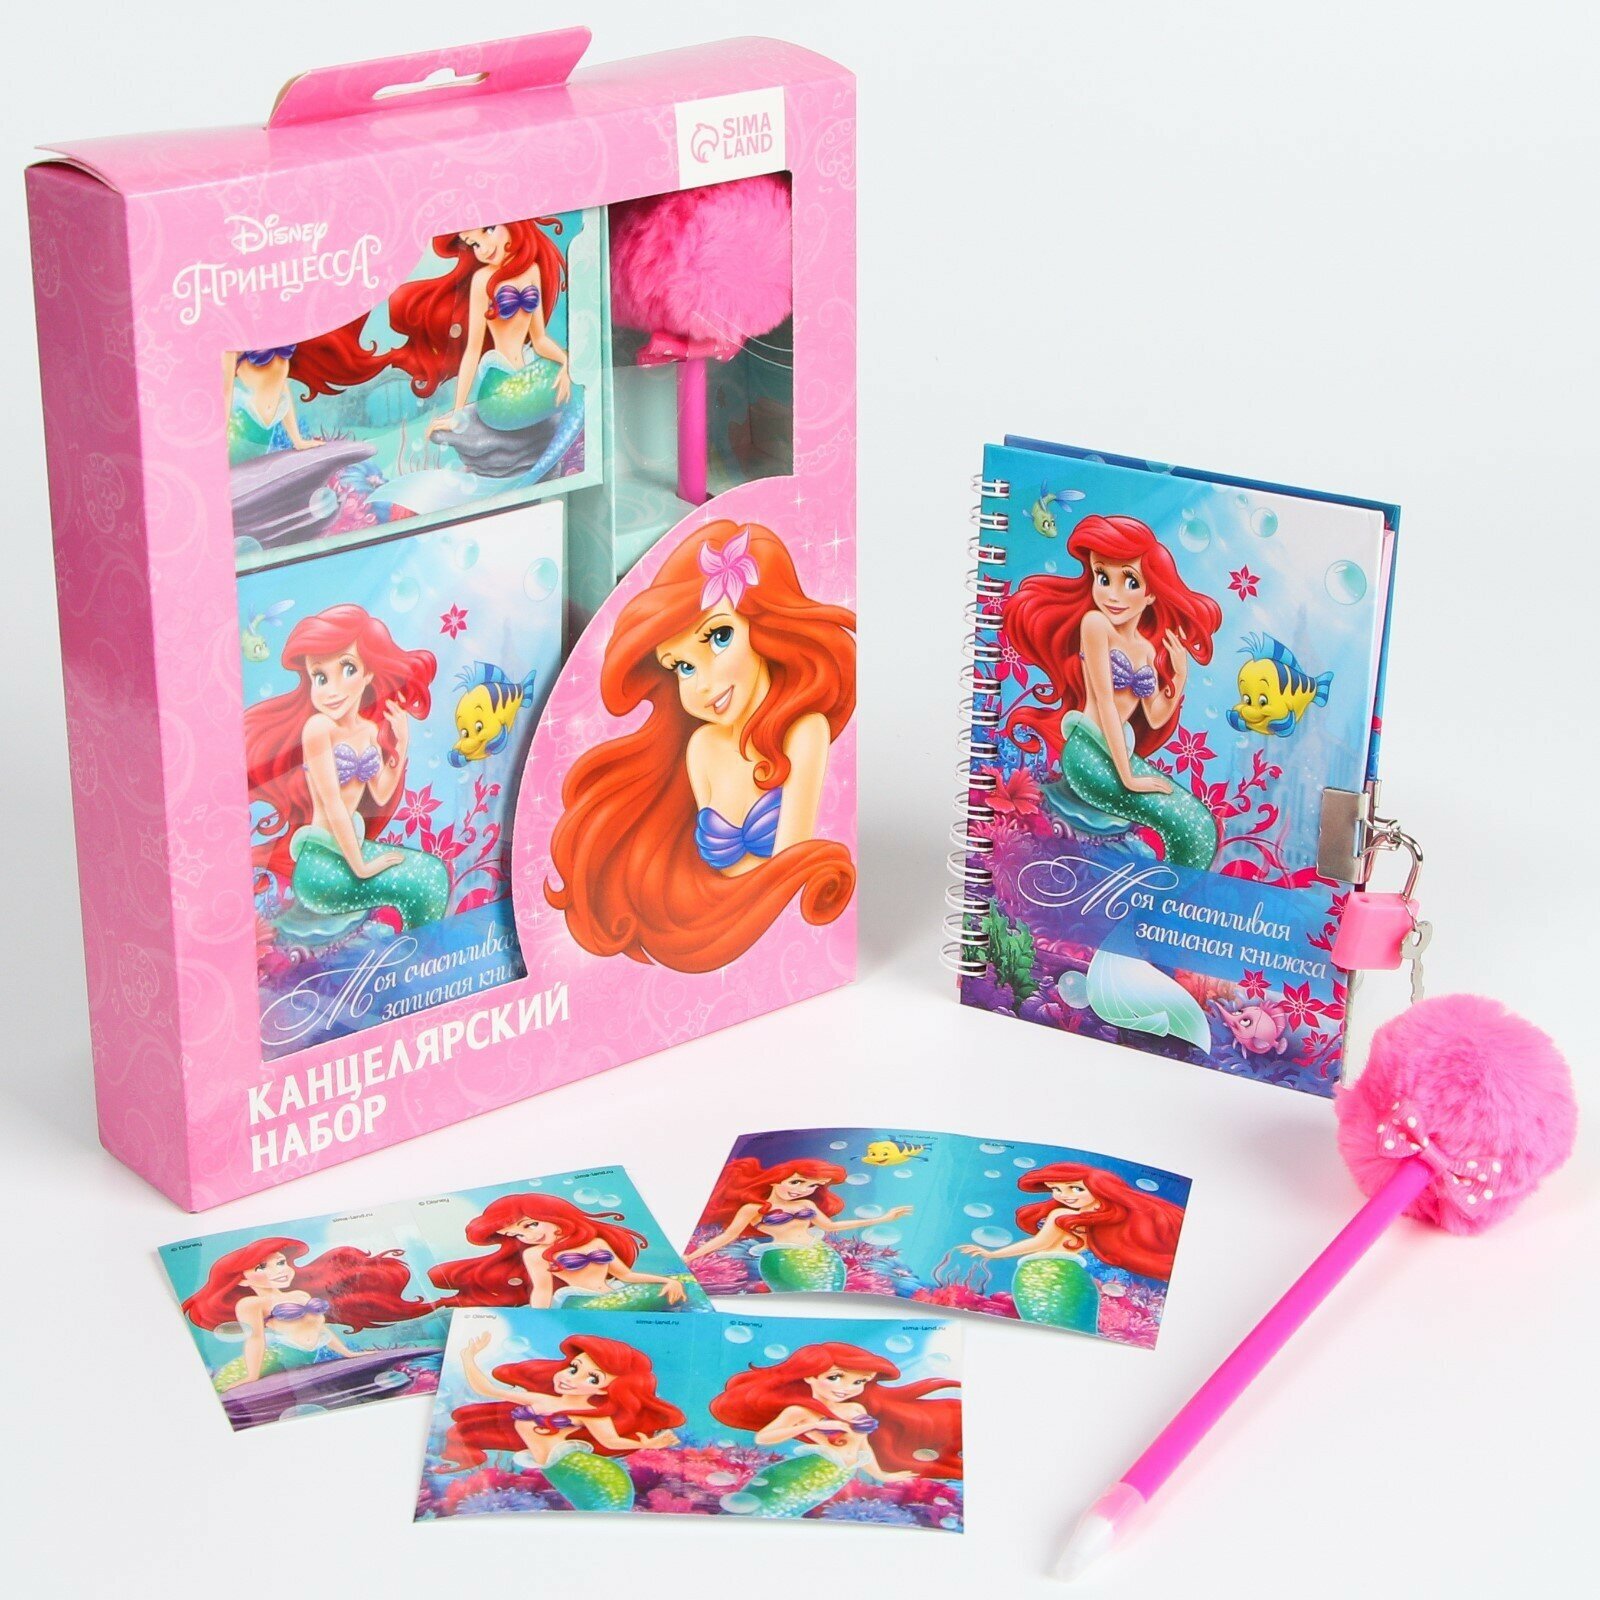 Детский подарочный набор Disney "Русалочка", канцелярский набор для девочек, блокнот за замке, ручка